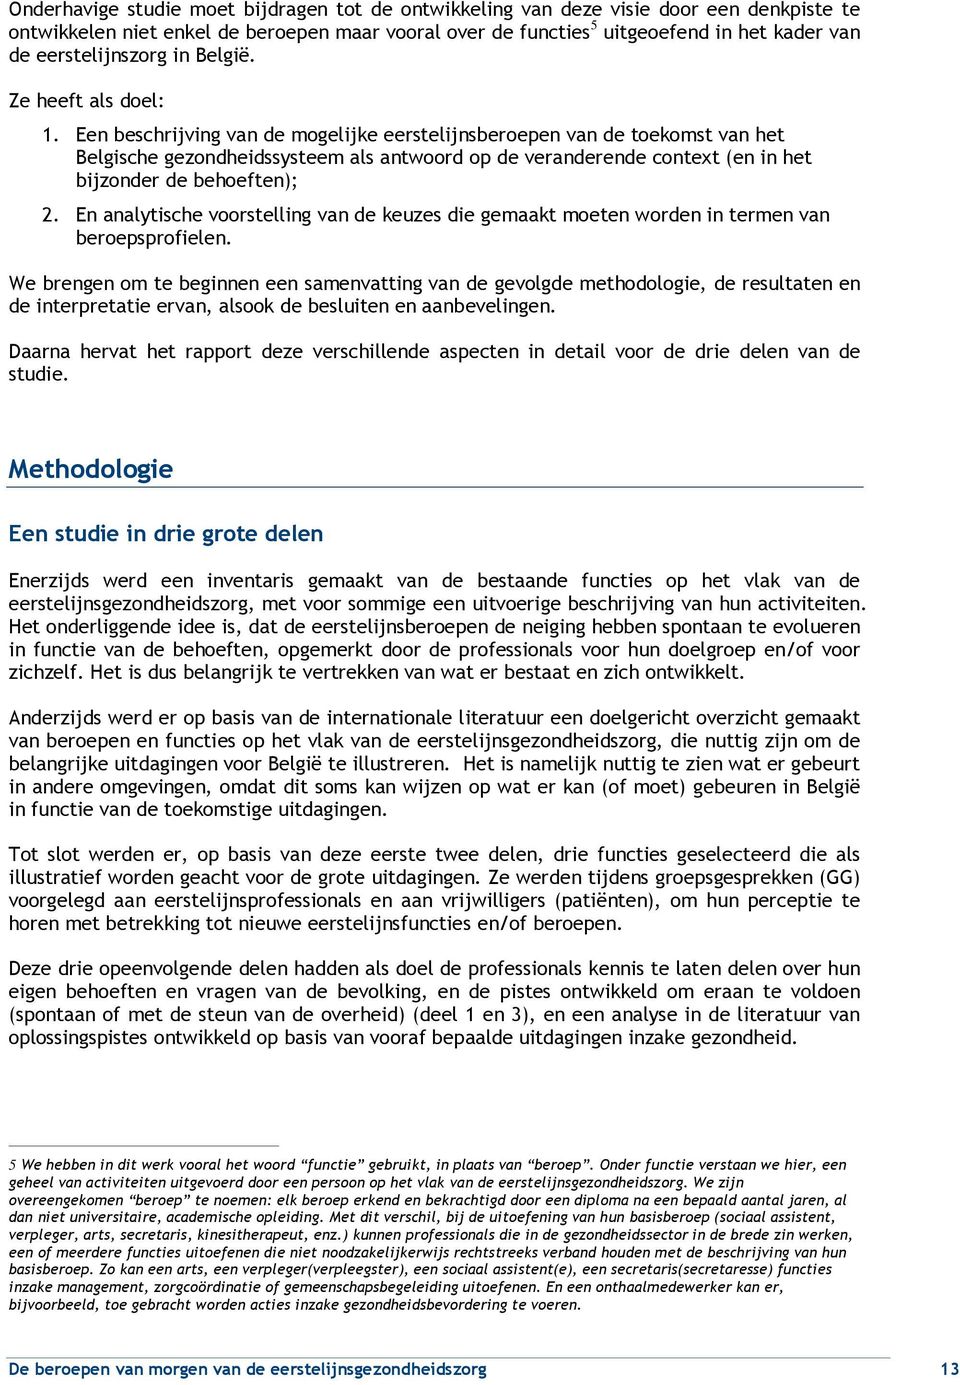 Een beschrijving van de mogelijke eerstelijnsberoepen van de toekomst van het Belgische gezondheidssysteem als antwoord op de veranderende context (en in het bijzonder de behoeften); 2.